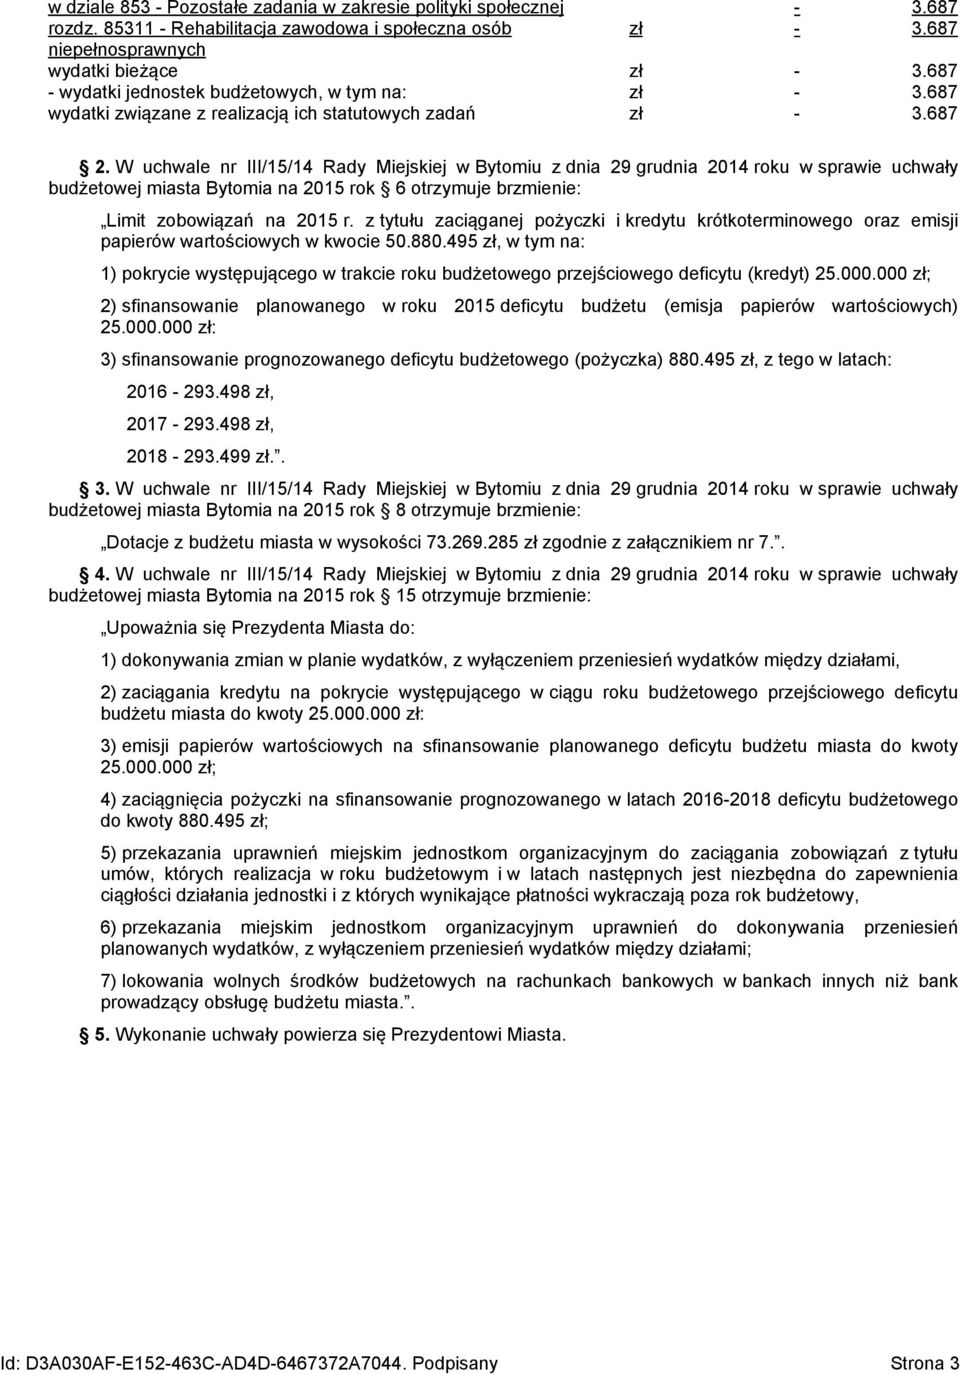 W uchwale nr III/15/14 z dnia 29 grudnia 2014 roku w sprawie uchwały budżetowej miasta Bytomia na 2015 rok 6 otrzymuje brzmienie: Limit zobowiązań na 2015 r.